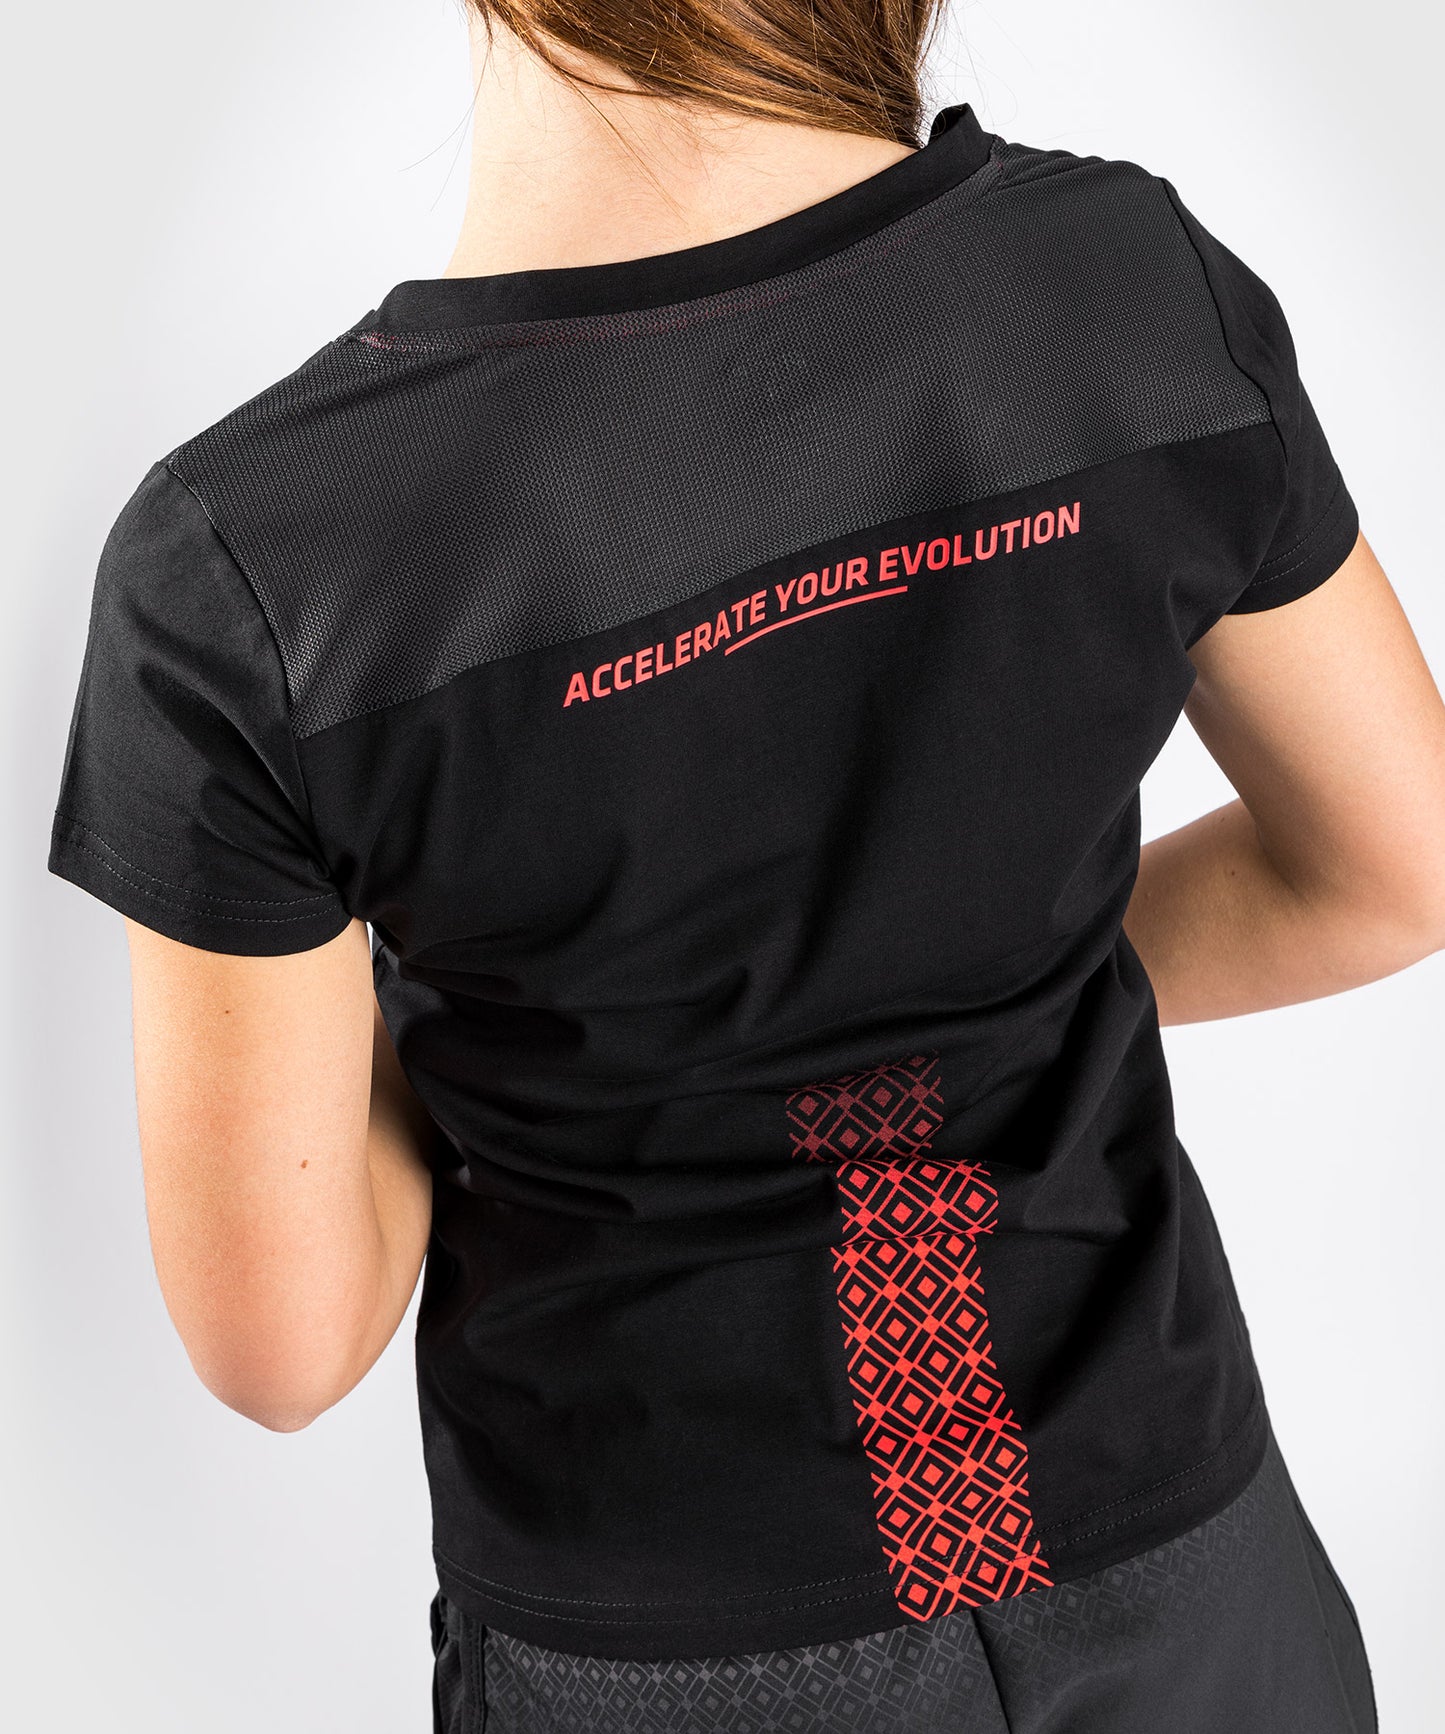 Camiseta Venum UFC Performance Institute - Para mujer - Negro